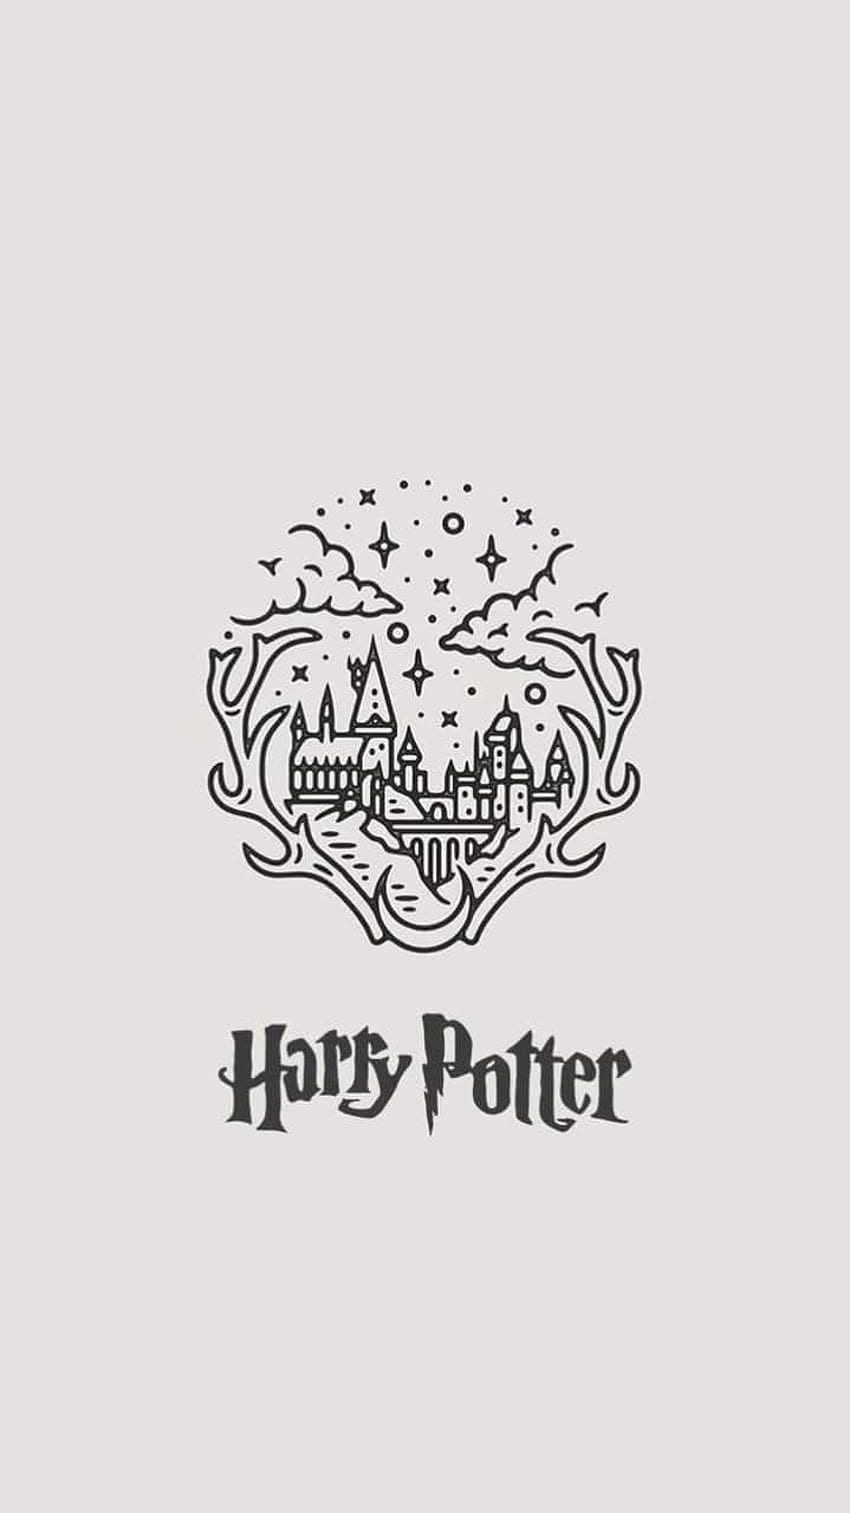 Harry Potter Wallpapers HD - PixelsTalk.Net